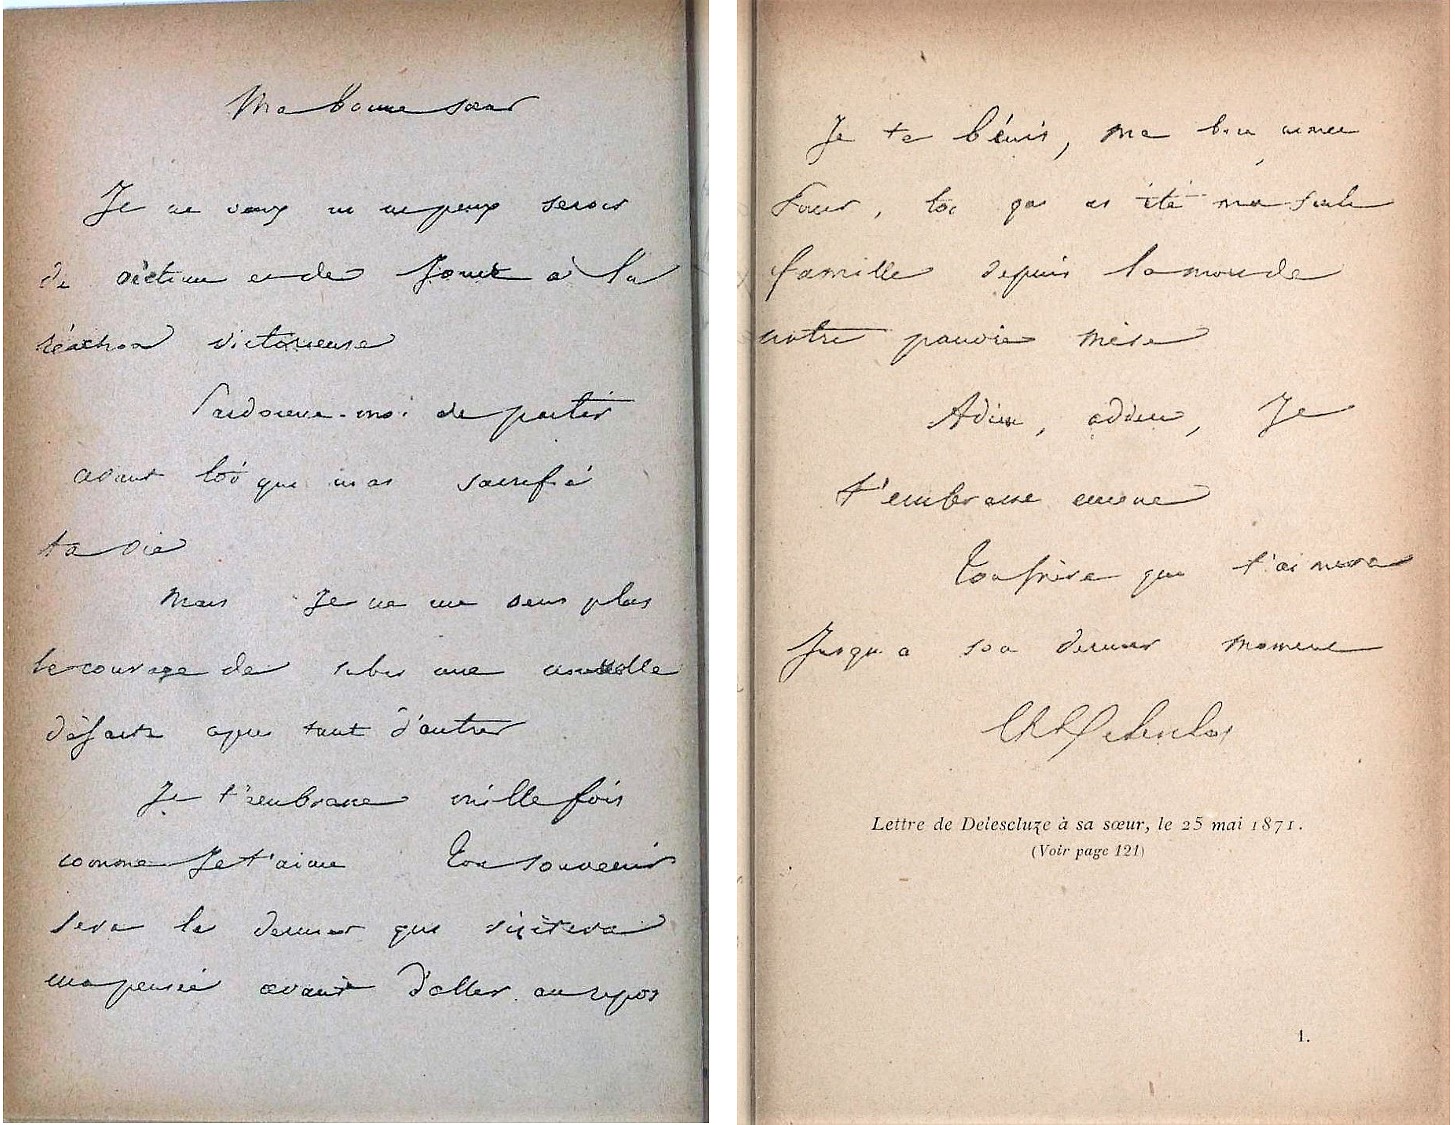 Lettre de Delescluze à sa sœur, le 25 mai 1871 Reproduite dans Charles Prolès, Charles Delescluze, 1830-1848-1871, Paris, Chamuel, 1898. https://gallica.bnf.fr/ark:/12148/bpt6k53278162/f1.item